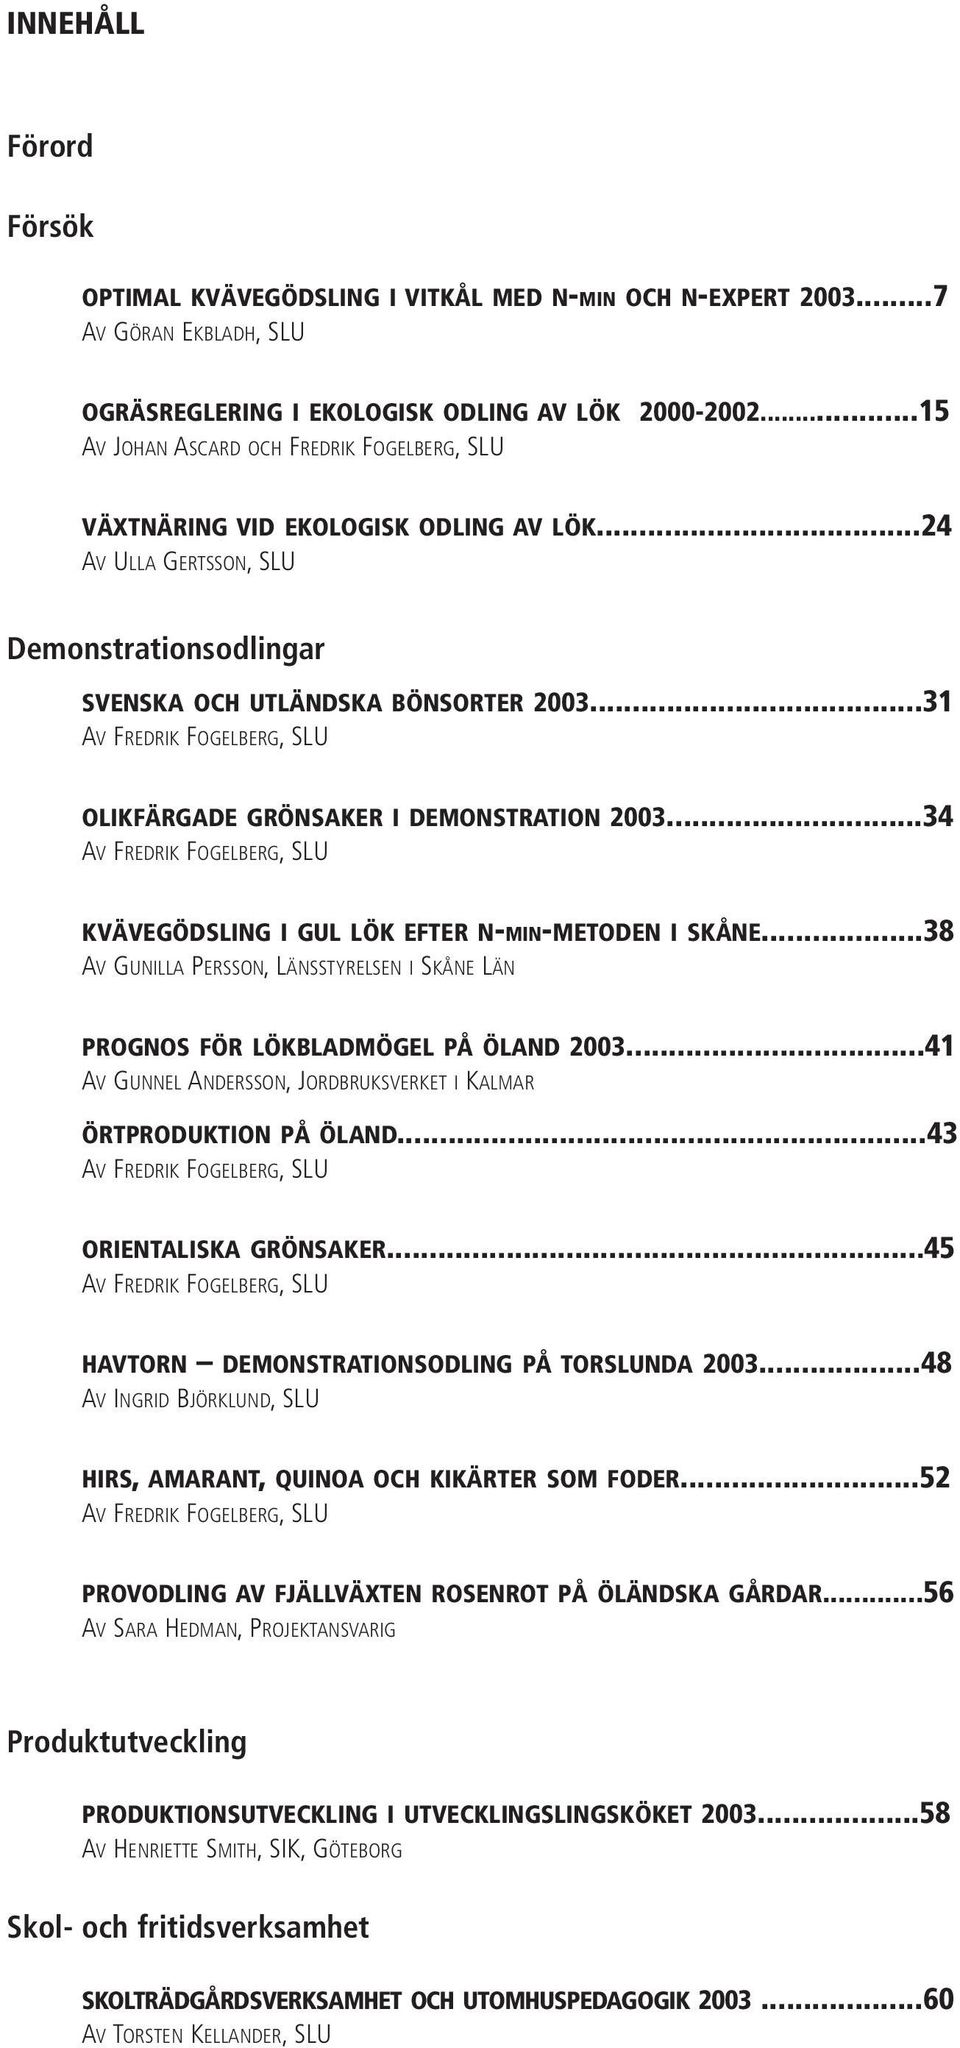 ..31 AV FREDRIK FOGELBERG,SLU OLIKFÄRGADE GRÖNSAKER I DEMONSTRATION 2003...34 AV FREDRIK FOGELBERG,SLU KVÄVEGÖDSLING I GUL LÖK EFTER N-MIN-METODEN I SKÅNE.